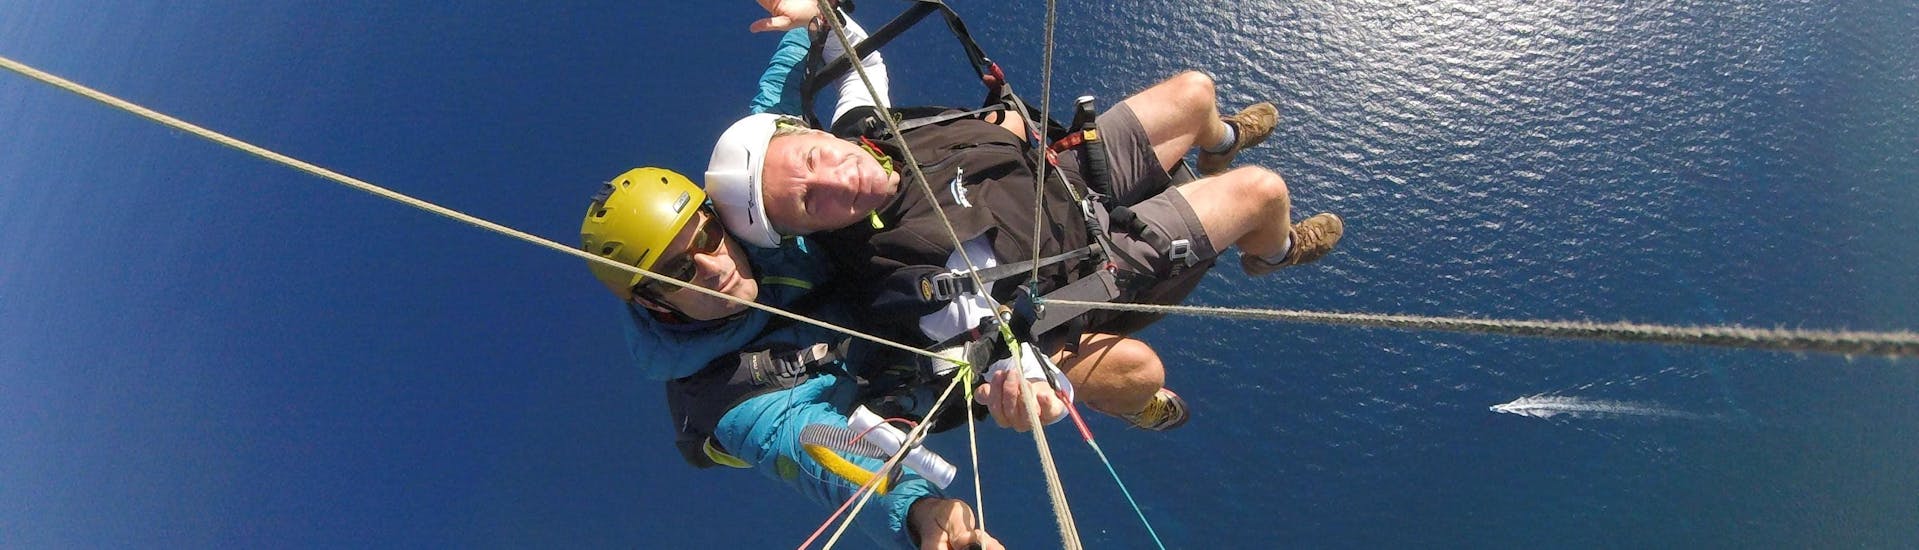 Un pilote de parapente de Saint Leu Parapente effectue un vol tandem parapente - Découverte 20min au-dessus de la Baie de Saint Leu à La Réunion.